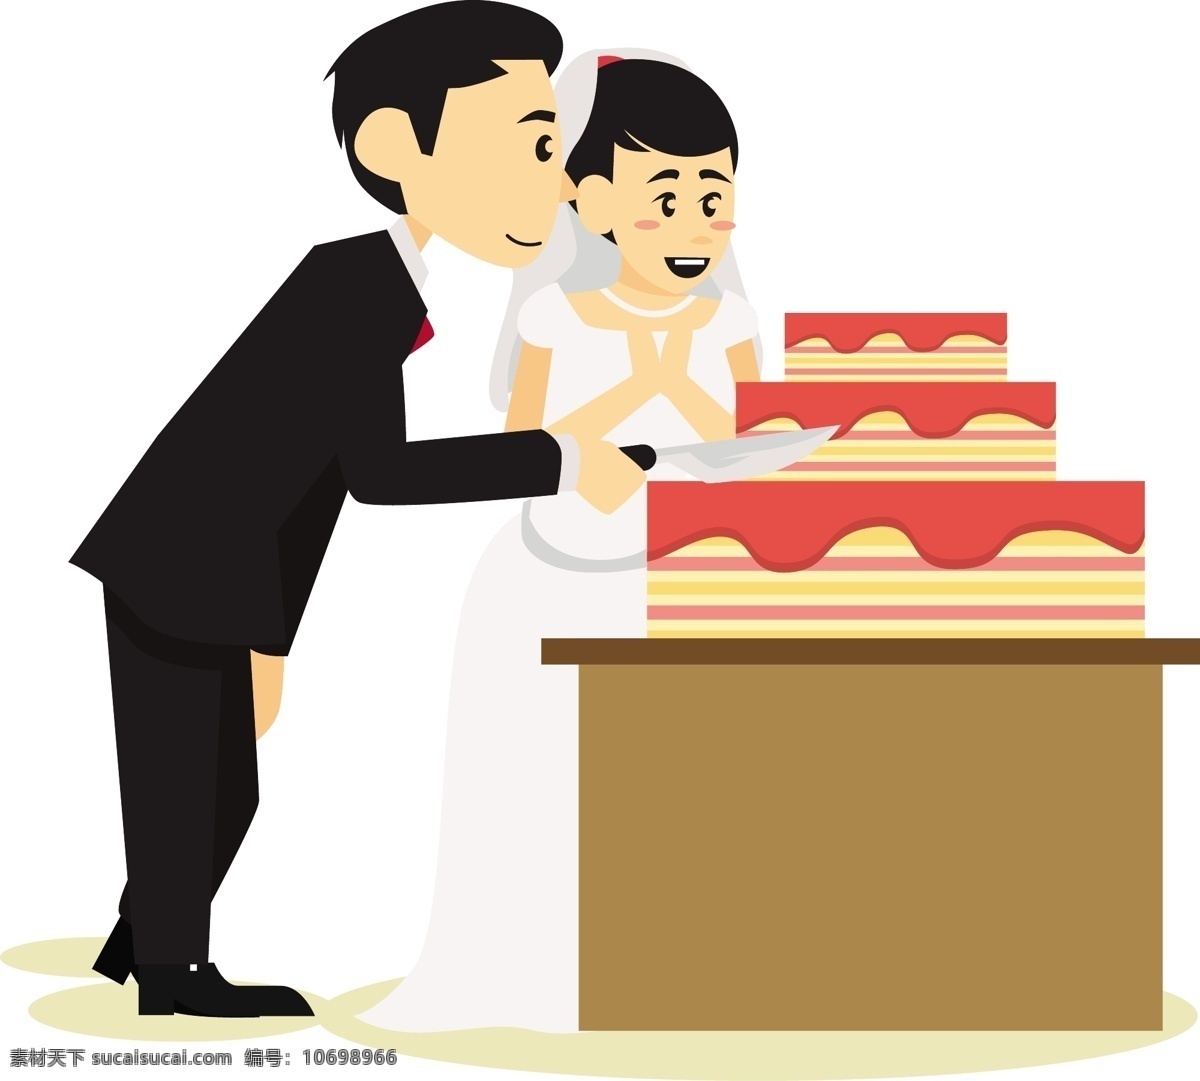 卡通 矢量 准备 切 蛋糕 新人 免 抠 婚礼 新婚 结婚 海边 浪漫 吹蜡烛 祈祷 婚纱 夫妻 恋人结婚仪式 切蛋糕